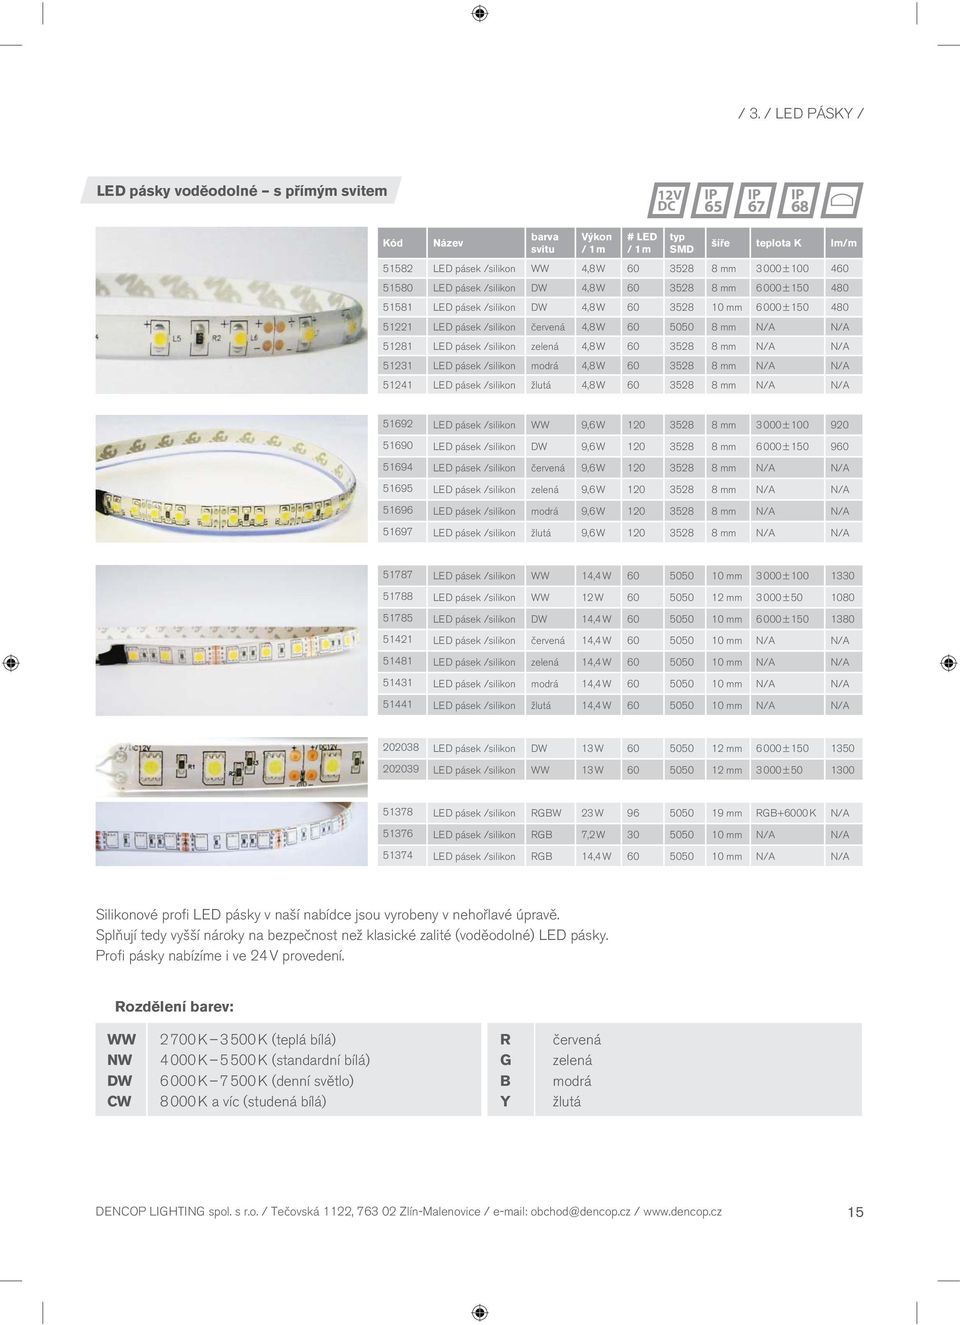 51281 LED pásek /silikon zelená 4,8 W 60 3528 8 mm N/A N/A 51231 LED pásek /silikon modrá 4,8 W 60 3528 8 mm N/A N/A 51241 LED pásek /silikon žlutá 4,8 W 60 3528 8 mm N/A N/A 51692 LED pásek /silikon